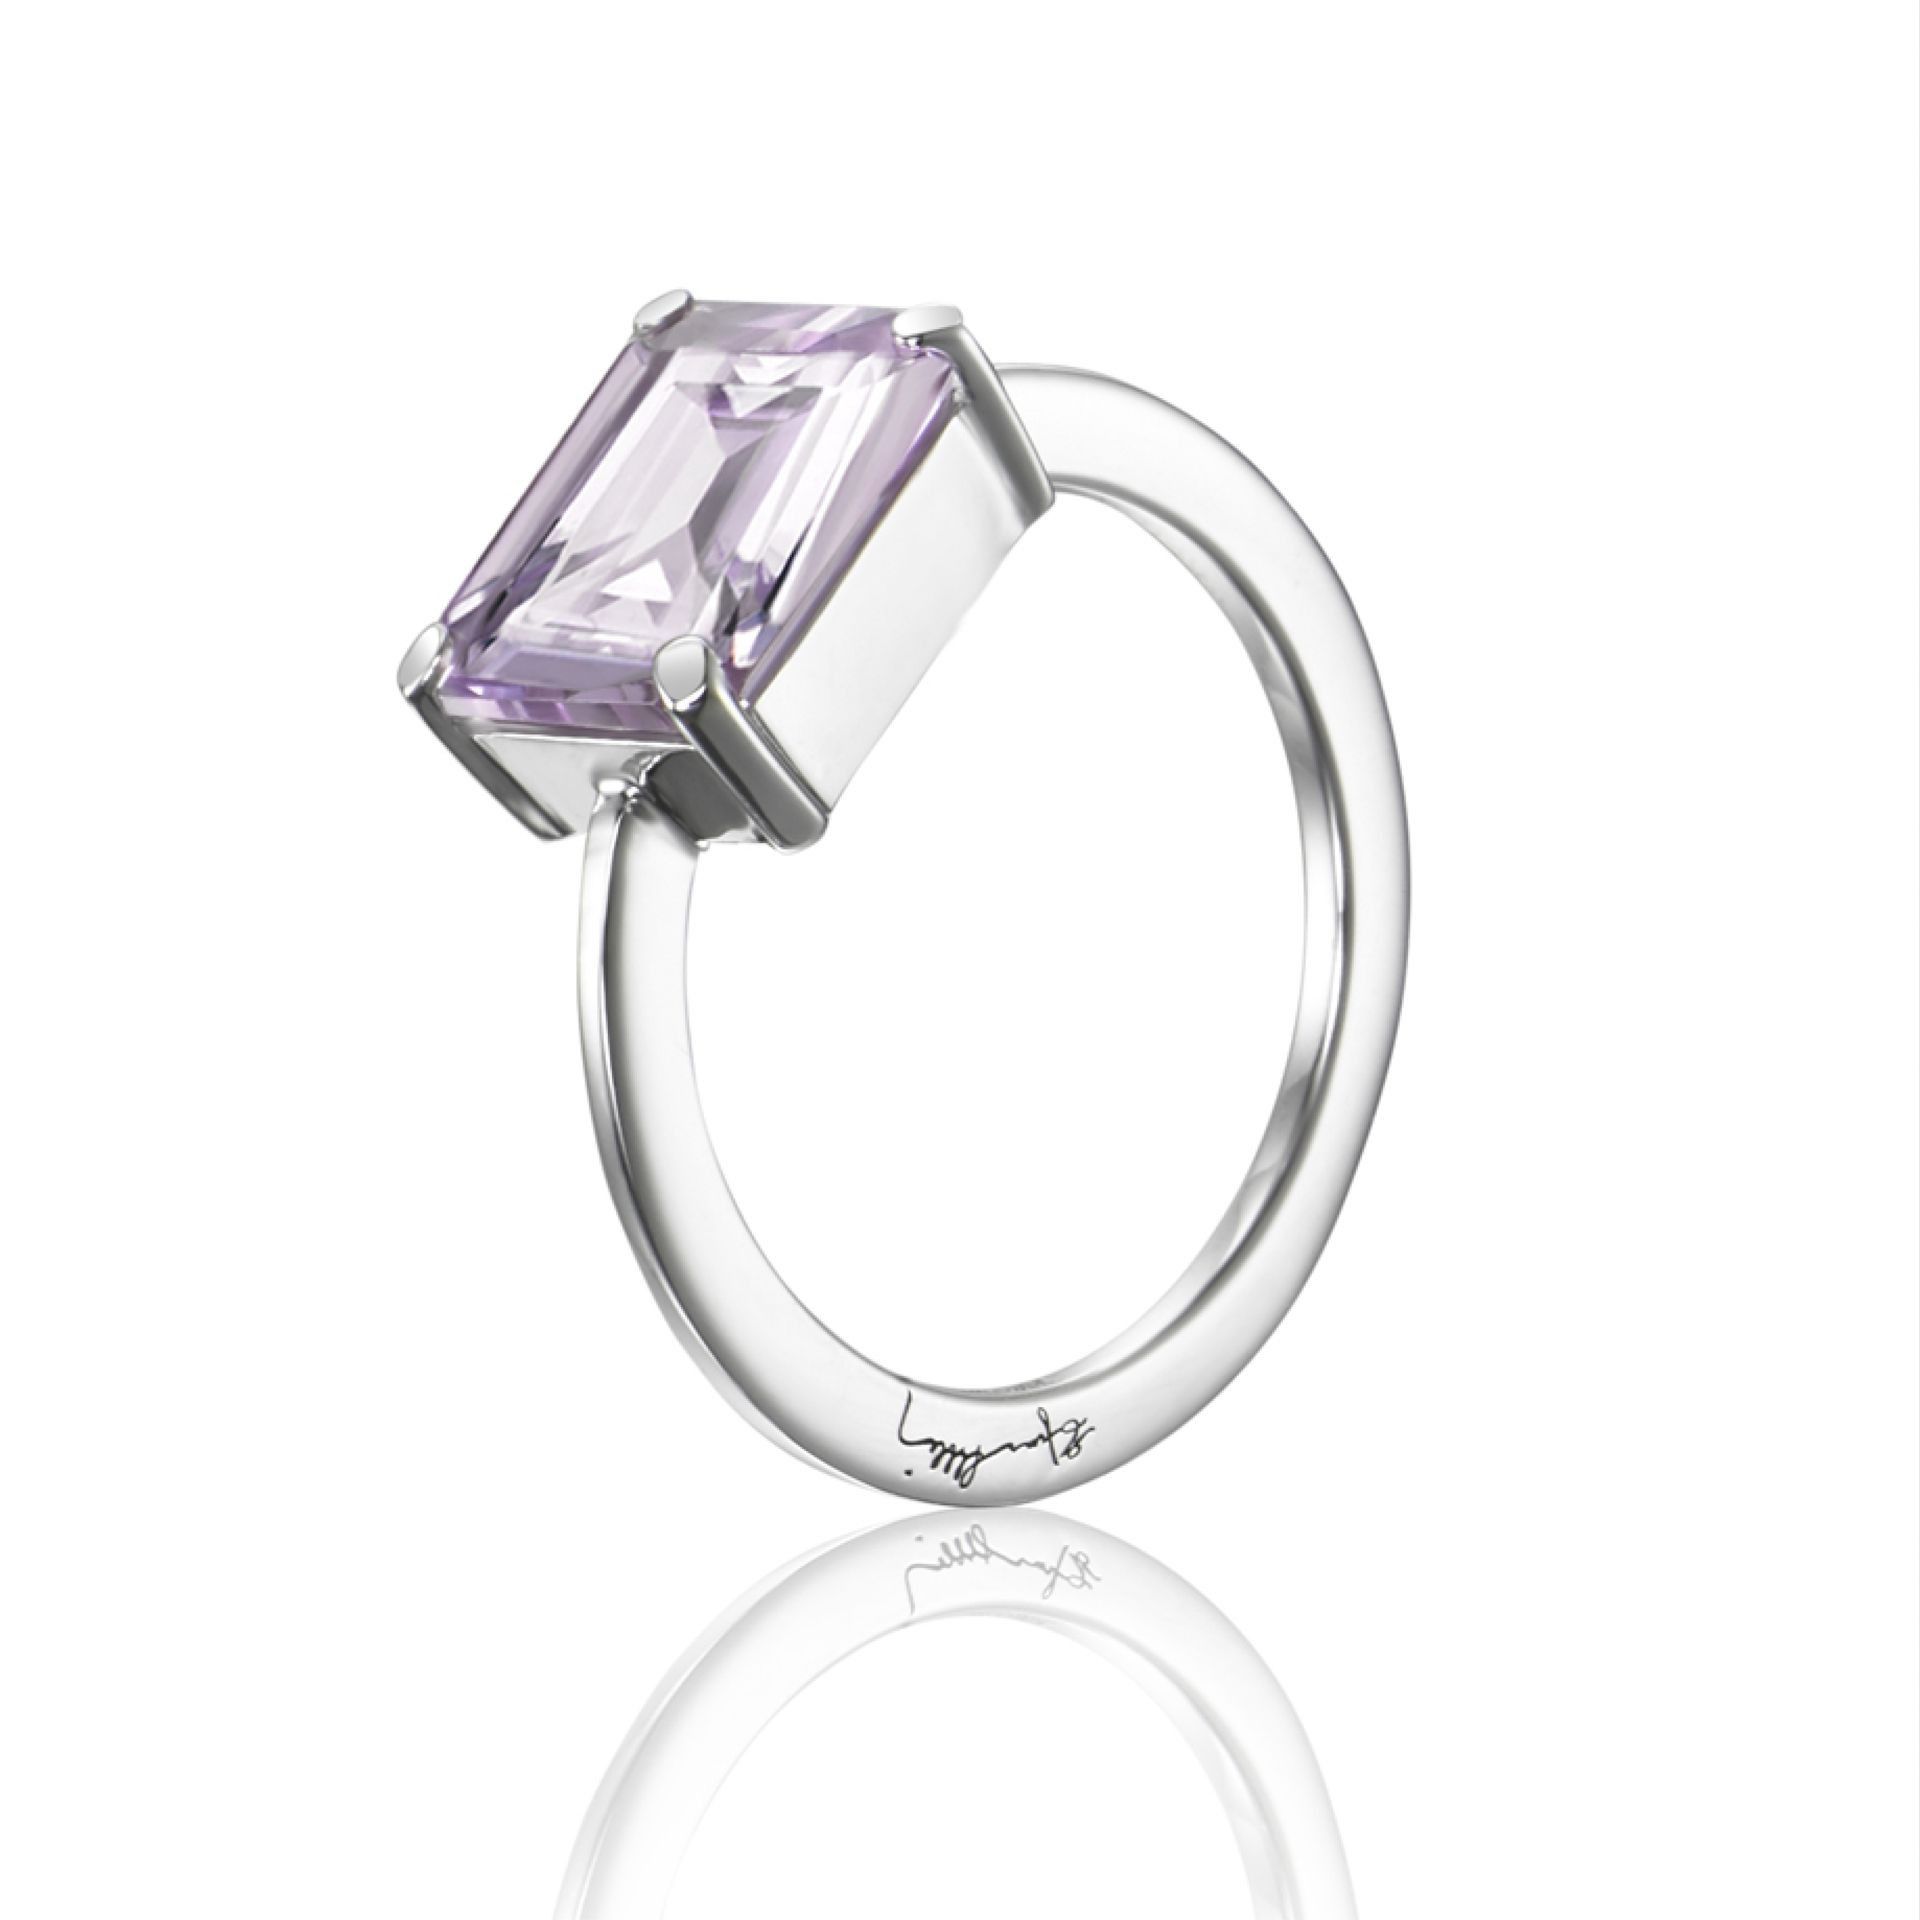 Efva Attling A Purple Dream Ring. 15.00 MM - SILVER